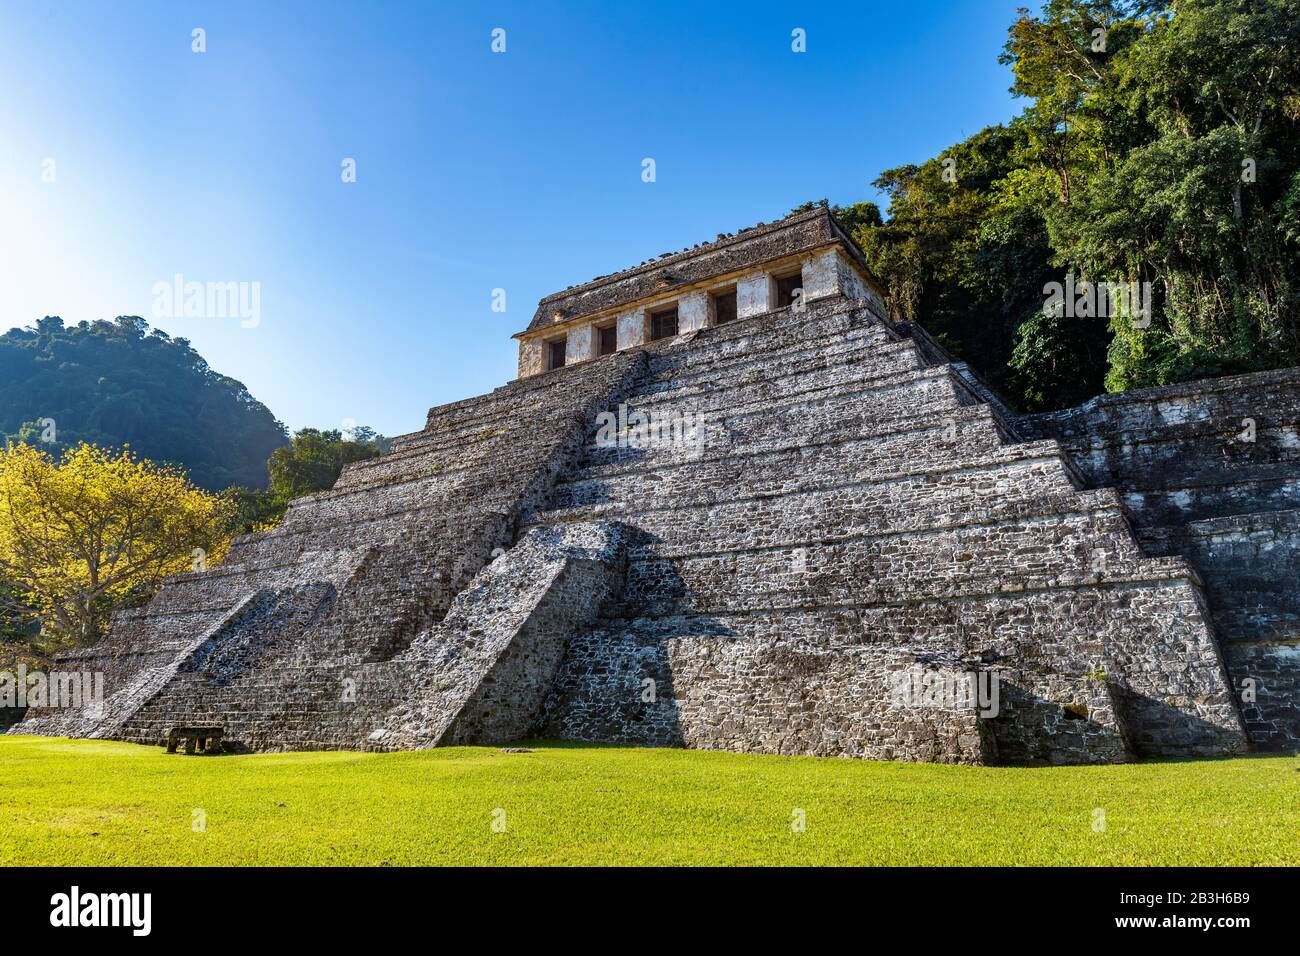 Der majestätische Tempel der Inschriften-Pyramide in der Maya-Ruine von Palenque, Bundesstaat Chiapas, Mexiko. Stockfoto